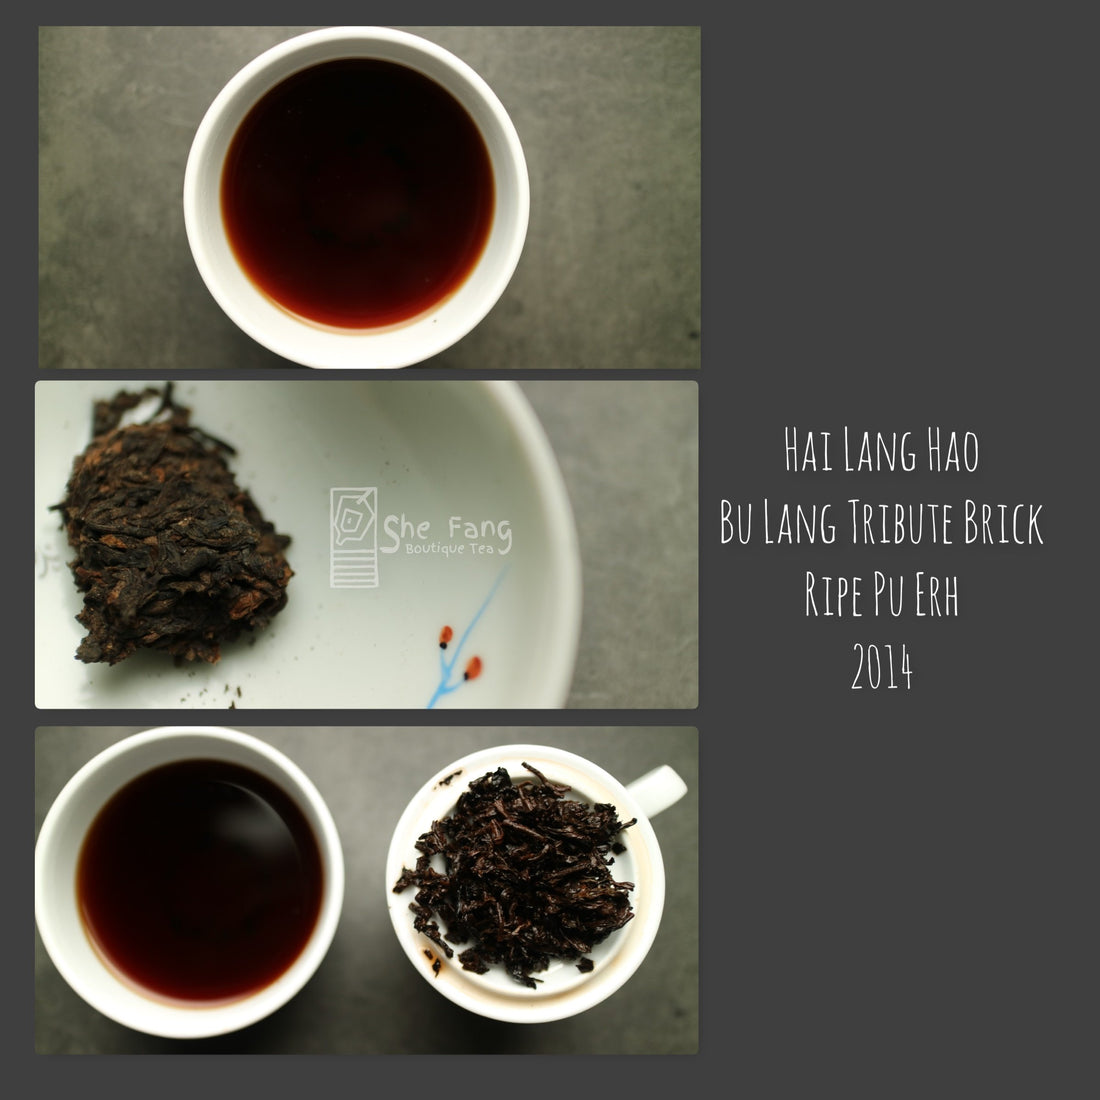 Tea Sourcing – batch N.240 Pu Erh Teas – Hai Lang Hao “Bu Lang tribute brick” Ripe Pu Erh 2014 - She Fang Boutique Tea